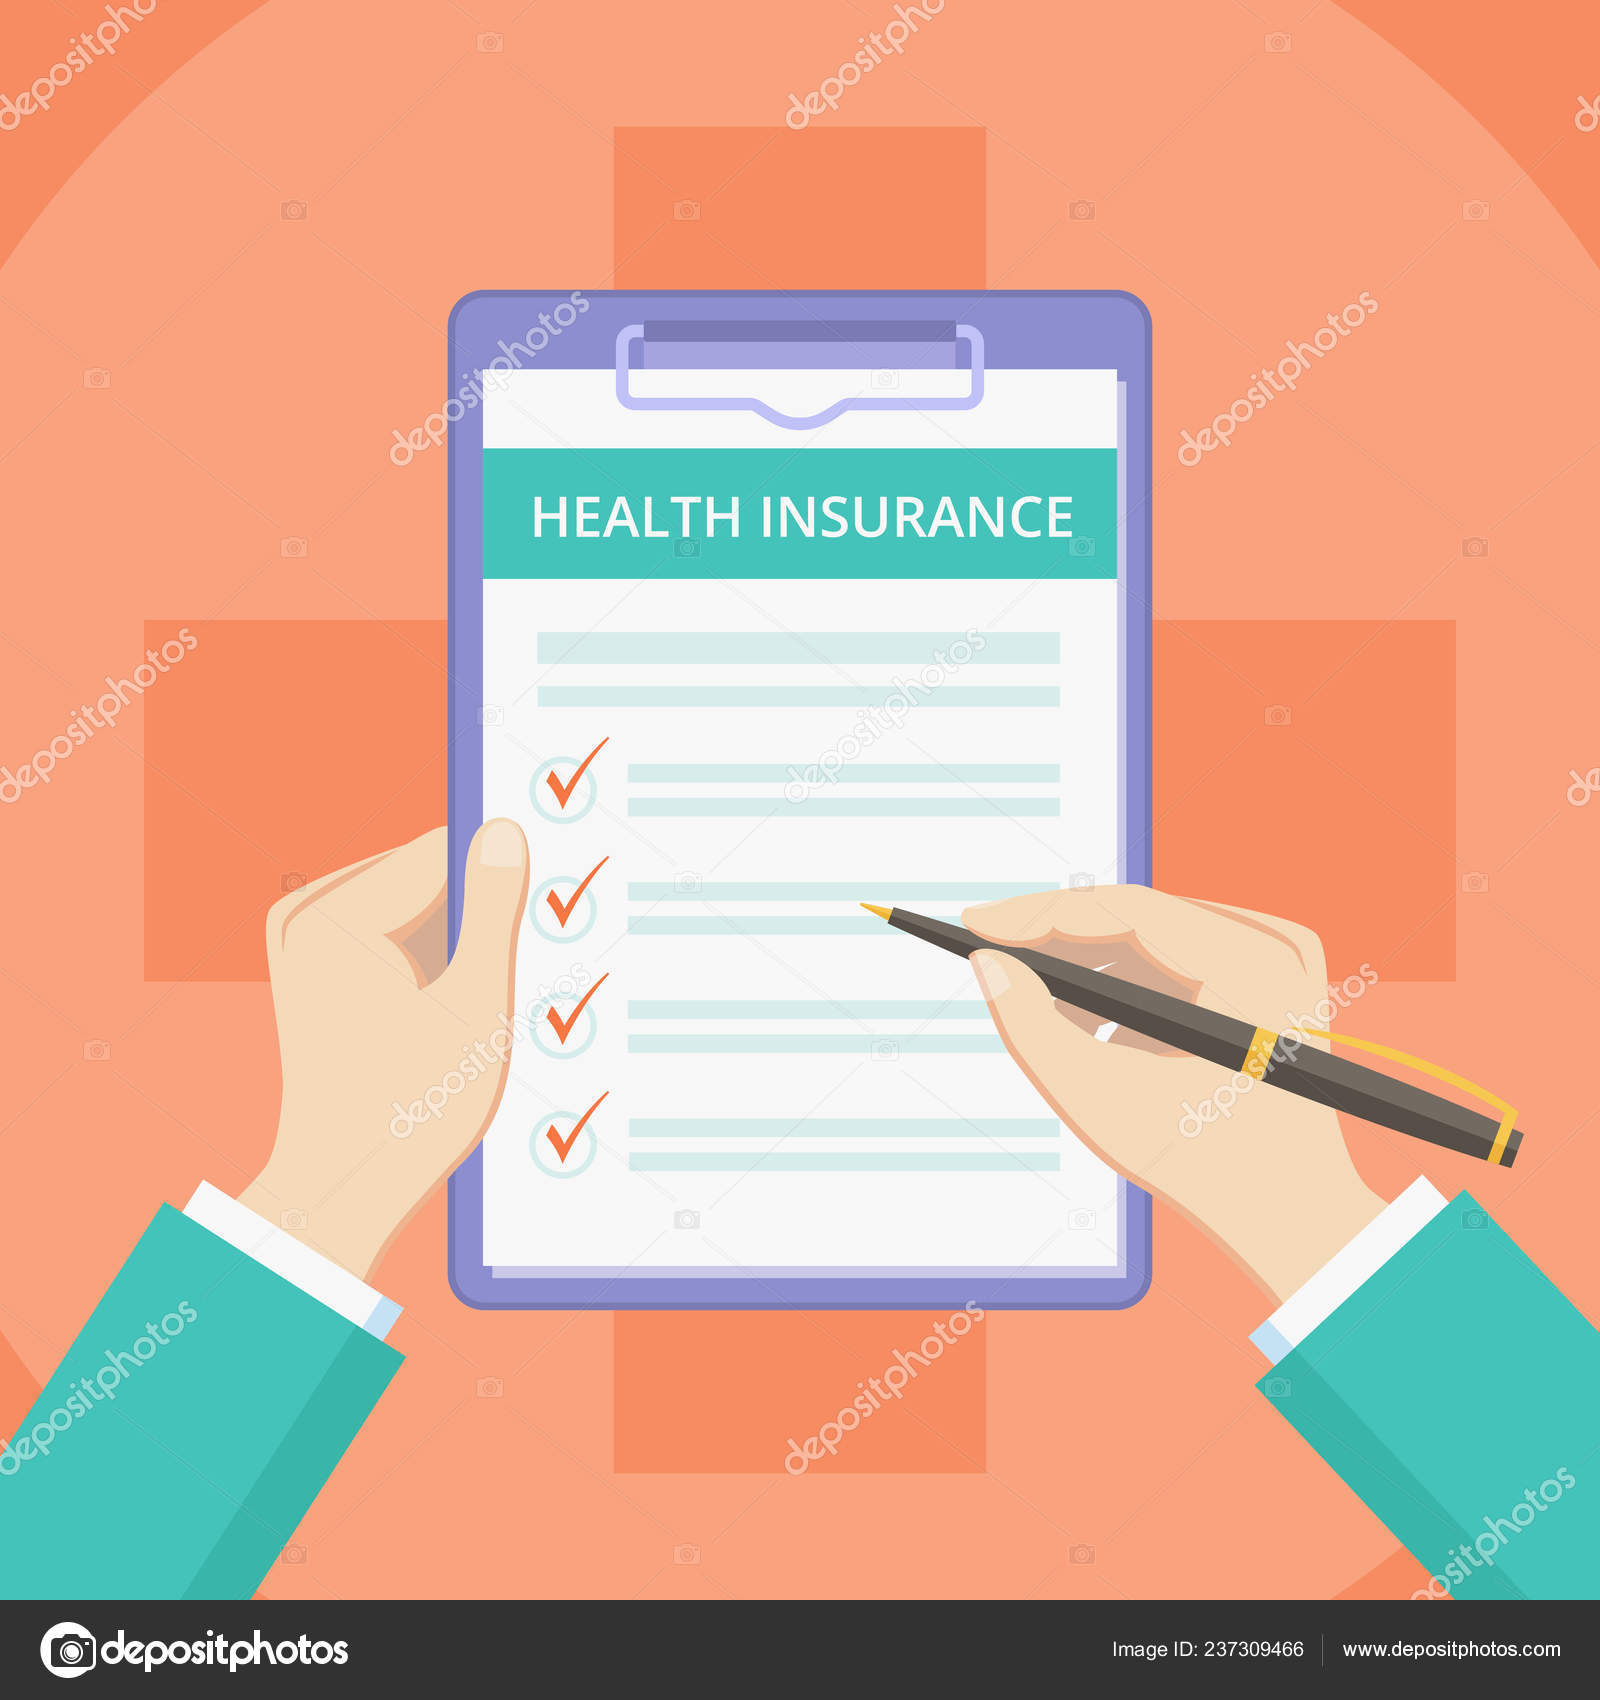 Verhoog jezelf Springen zeemijl Medical insurance policy on clipboard with hands Stock Illustration by  ©Moonnoon #237309466